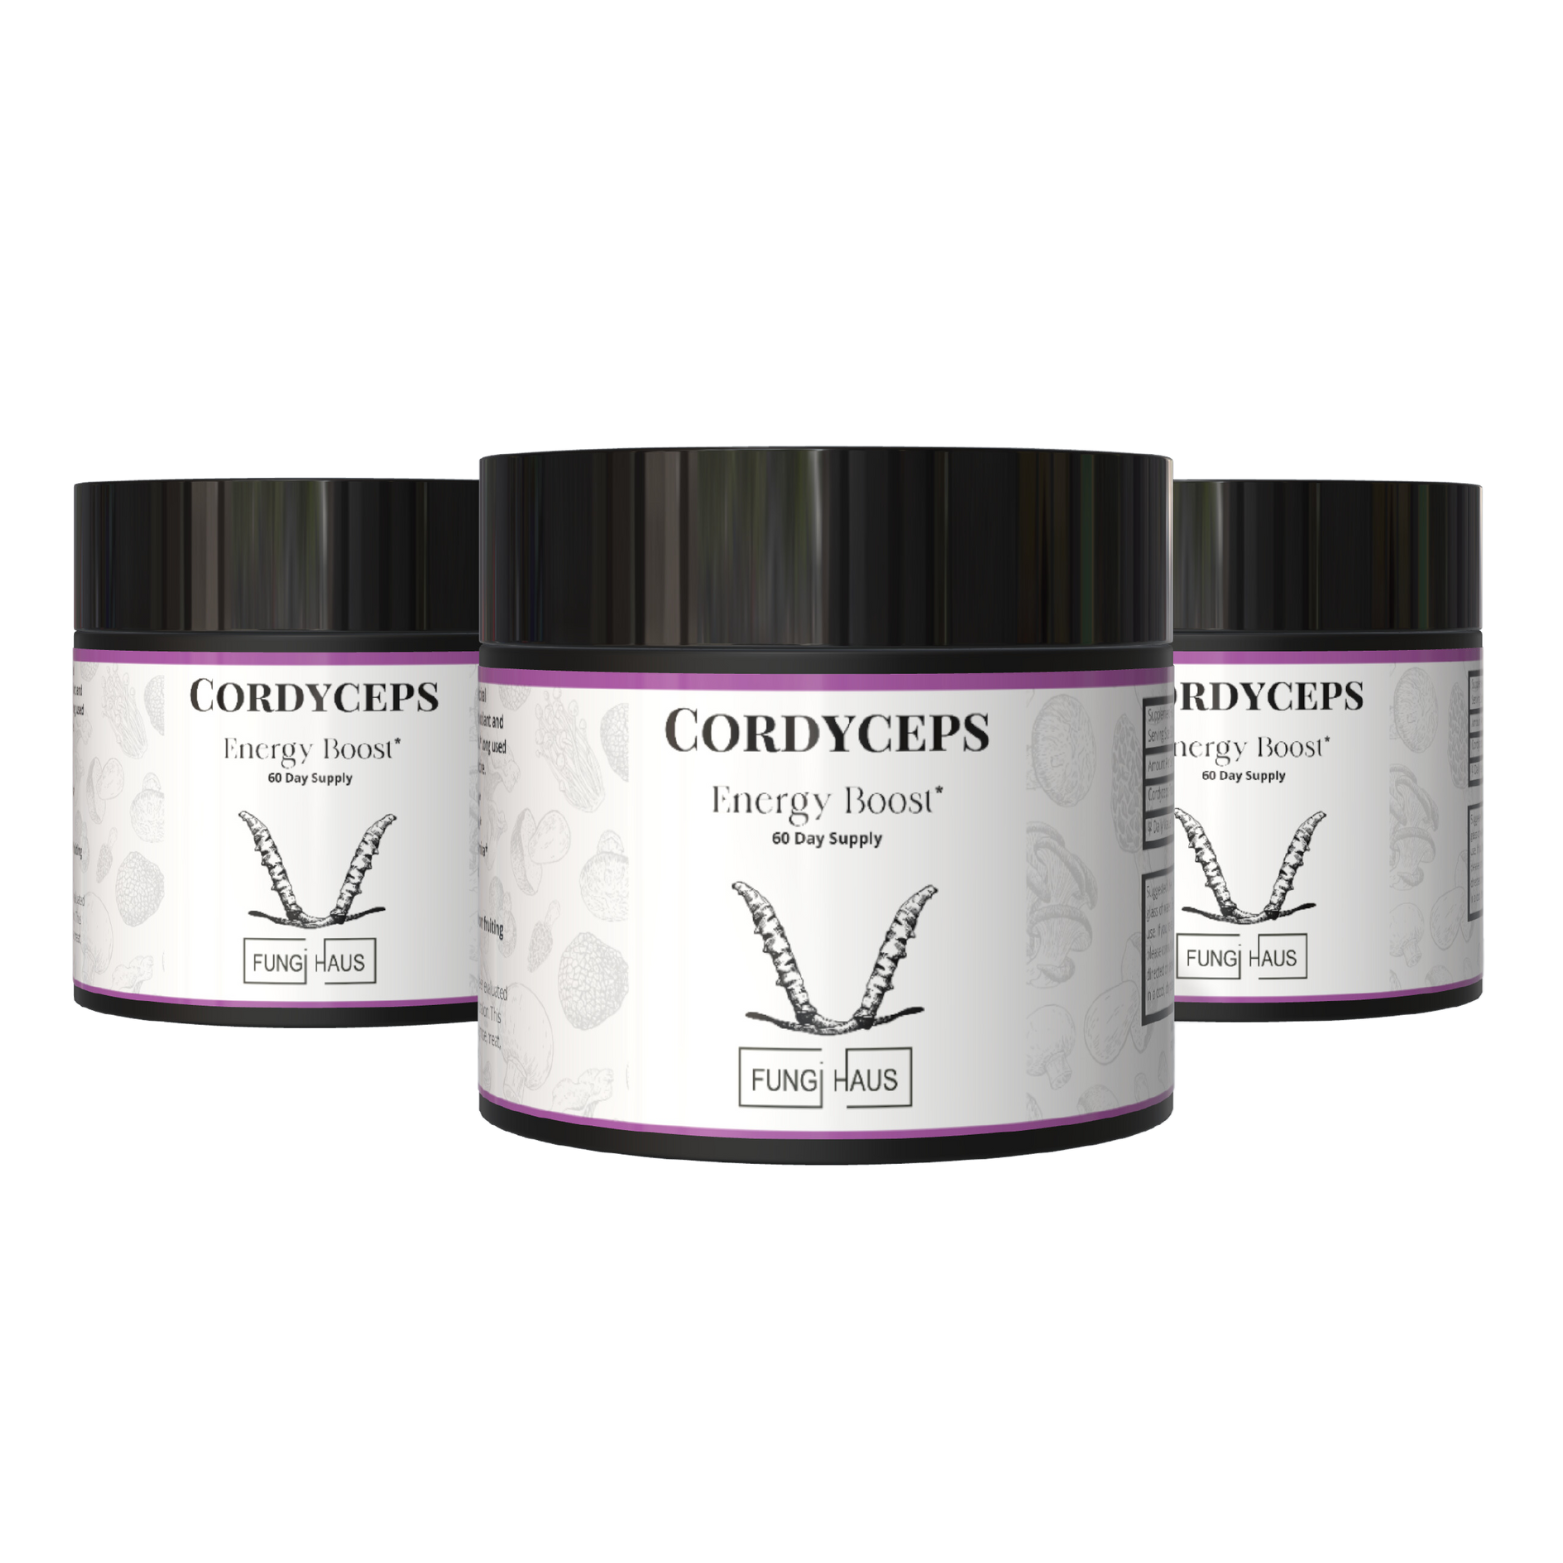 Cordyceps Energy Boost* - 60 Day Supply - Powder